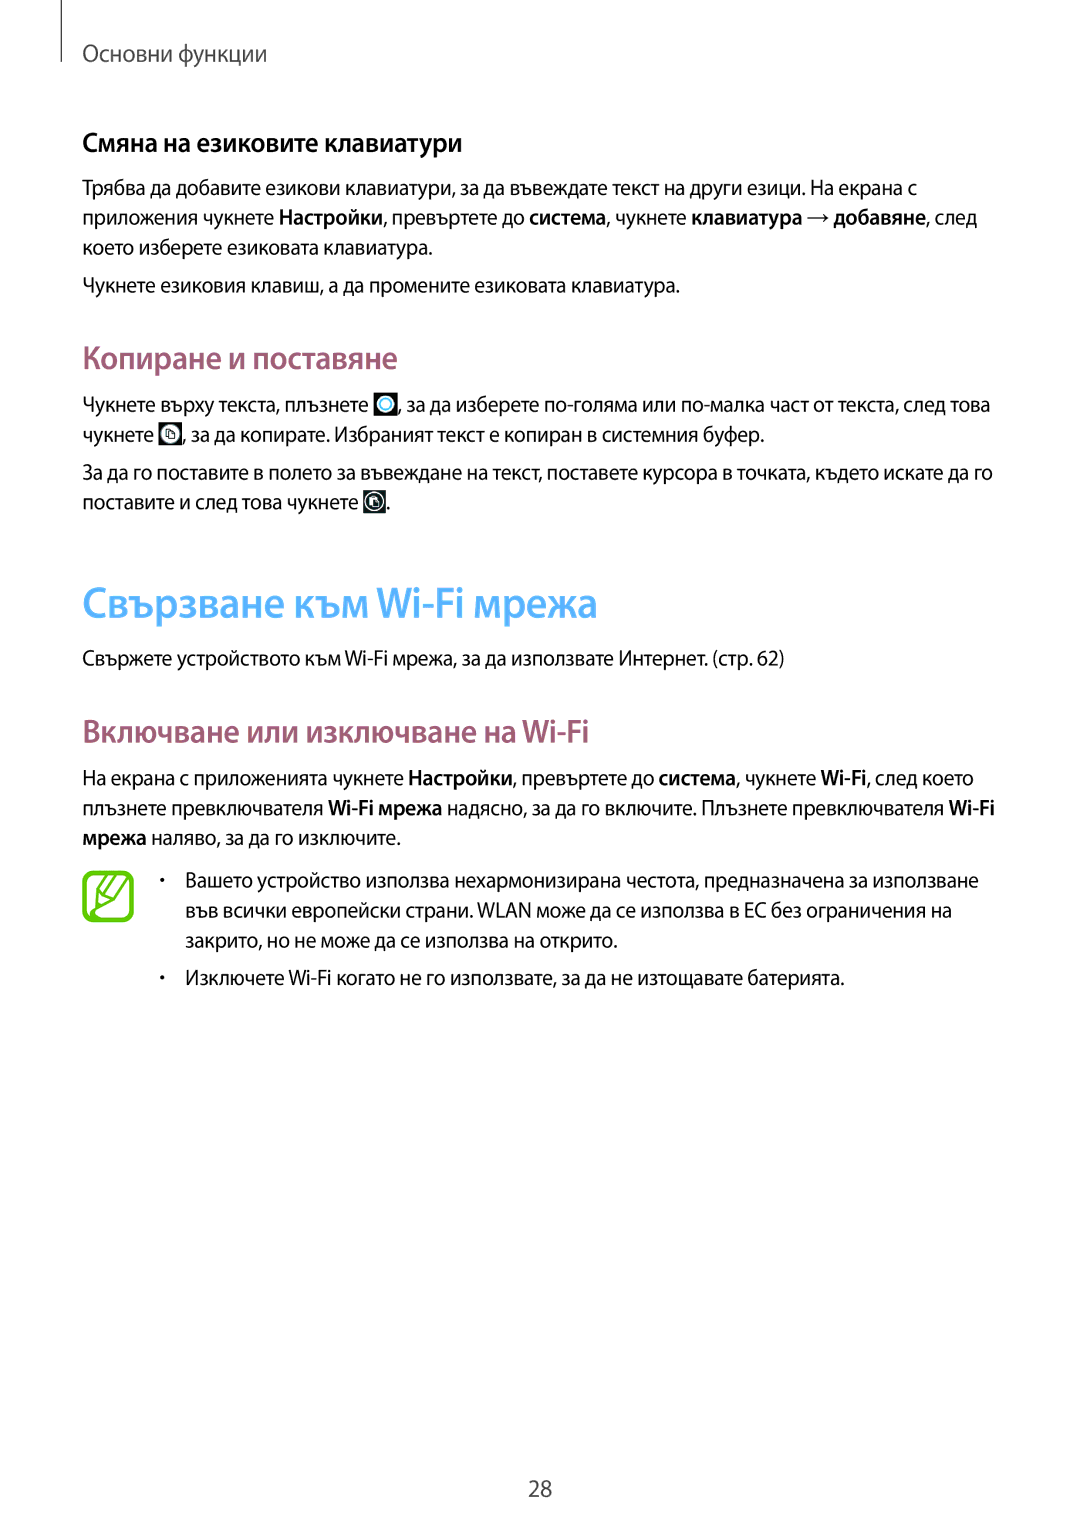 Samsung GT-I8750ALAVVT, GT-I8750ALAMTL Свързване към Wi-Fi мрежа, Копиране и поставяне, Включване или изключване на Wi-Fi 